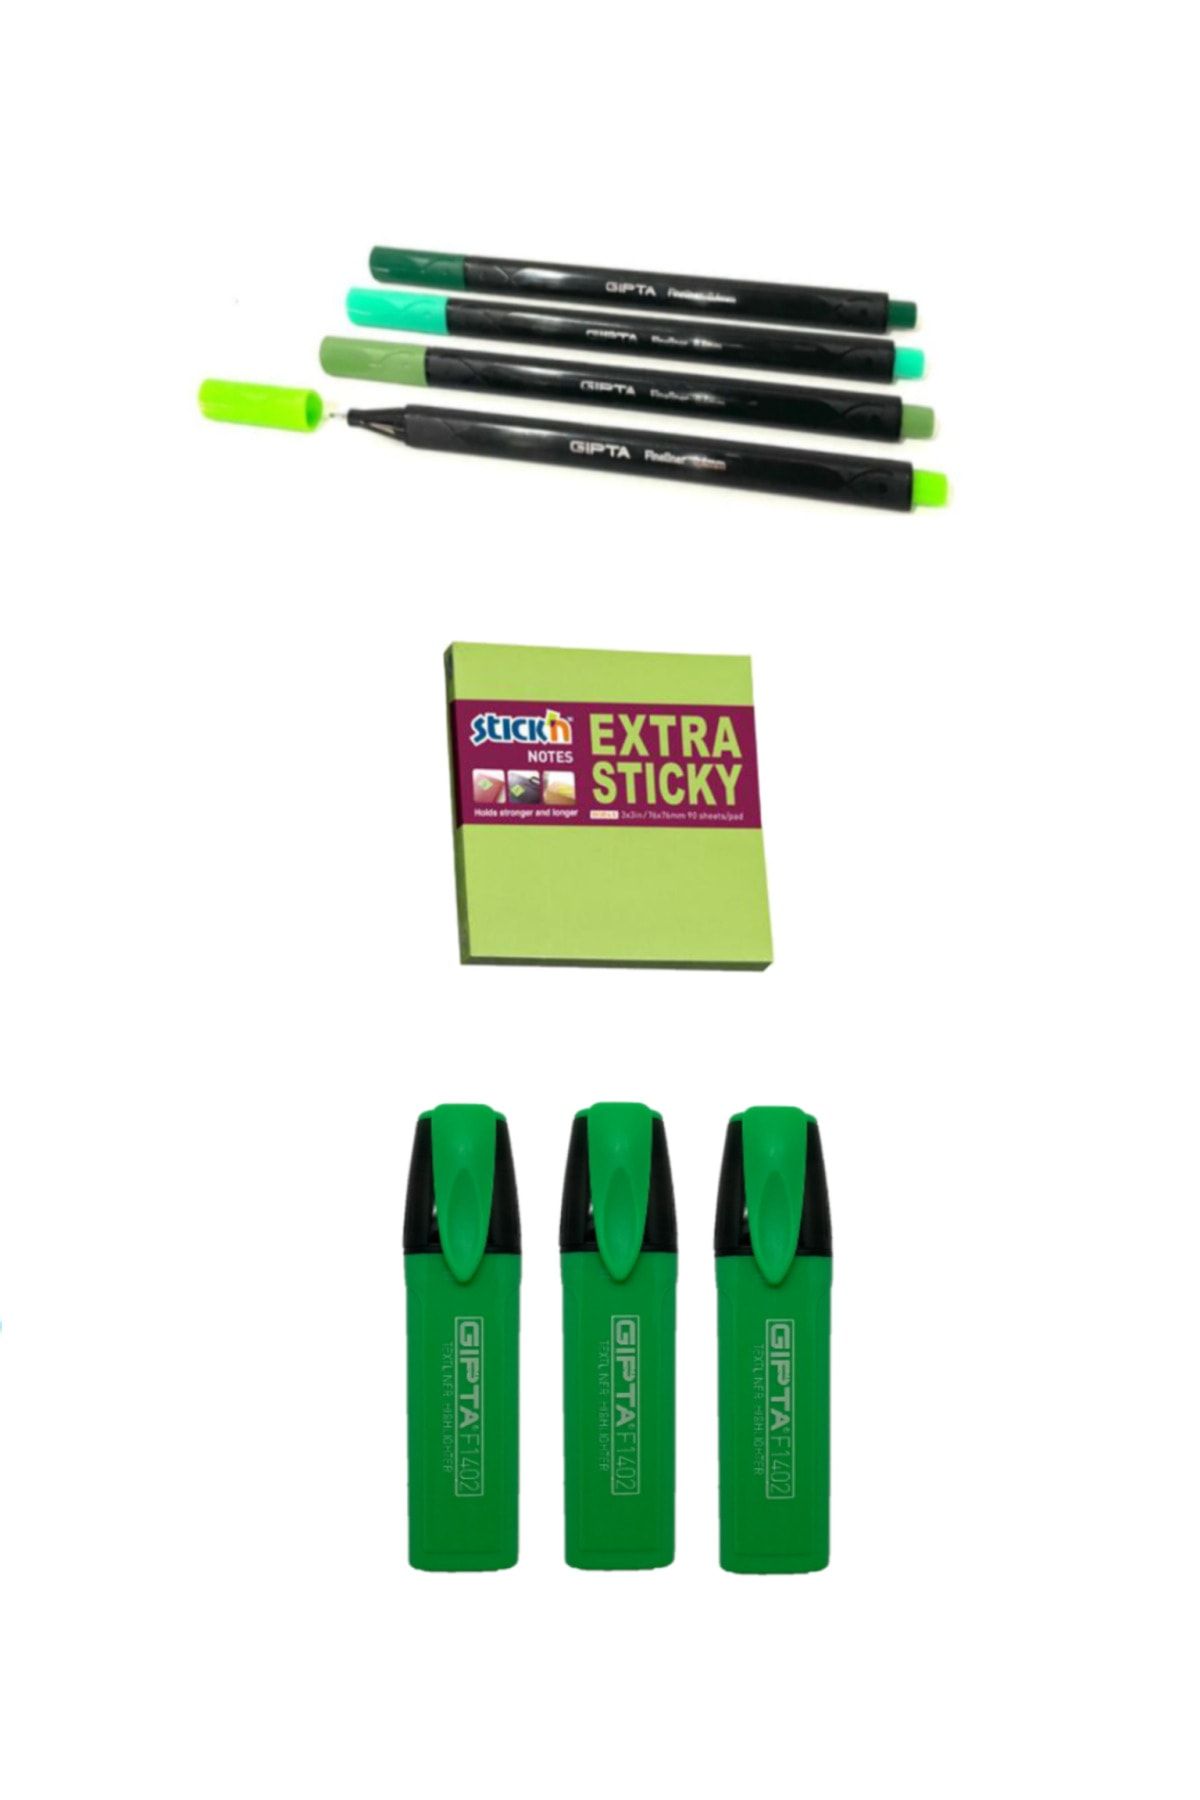 Gıpta Yeşil Tonları Fineliner + Extra Yapışkanlı Stıck'n + Fosforlu Kalem Set